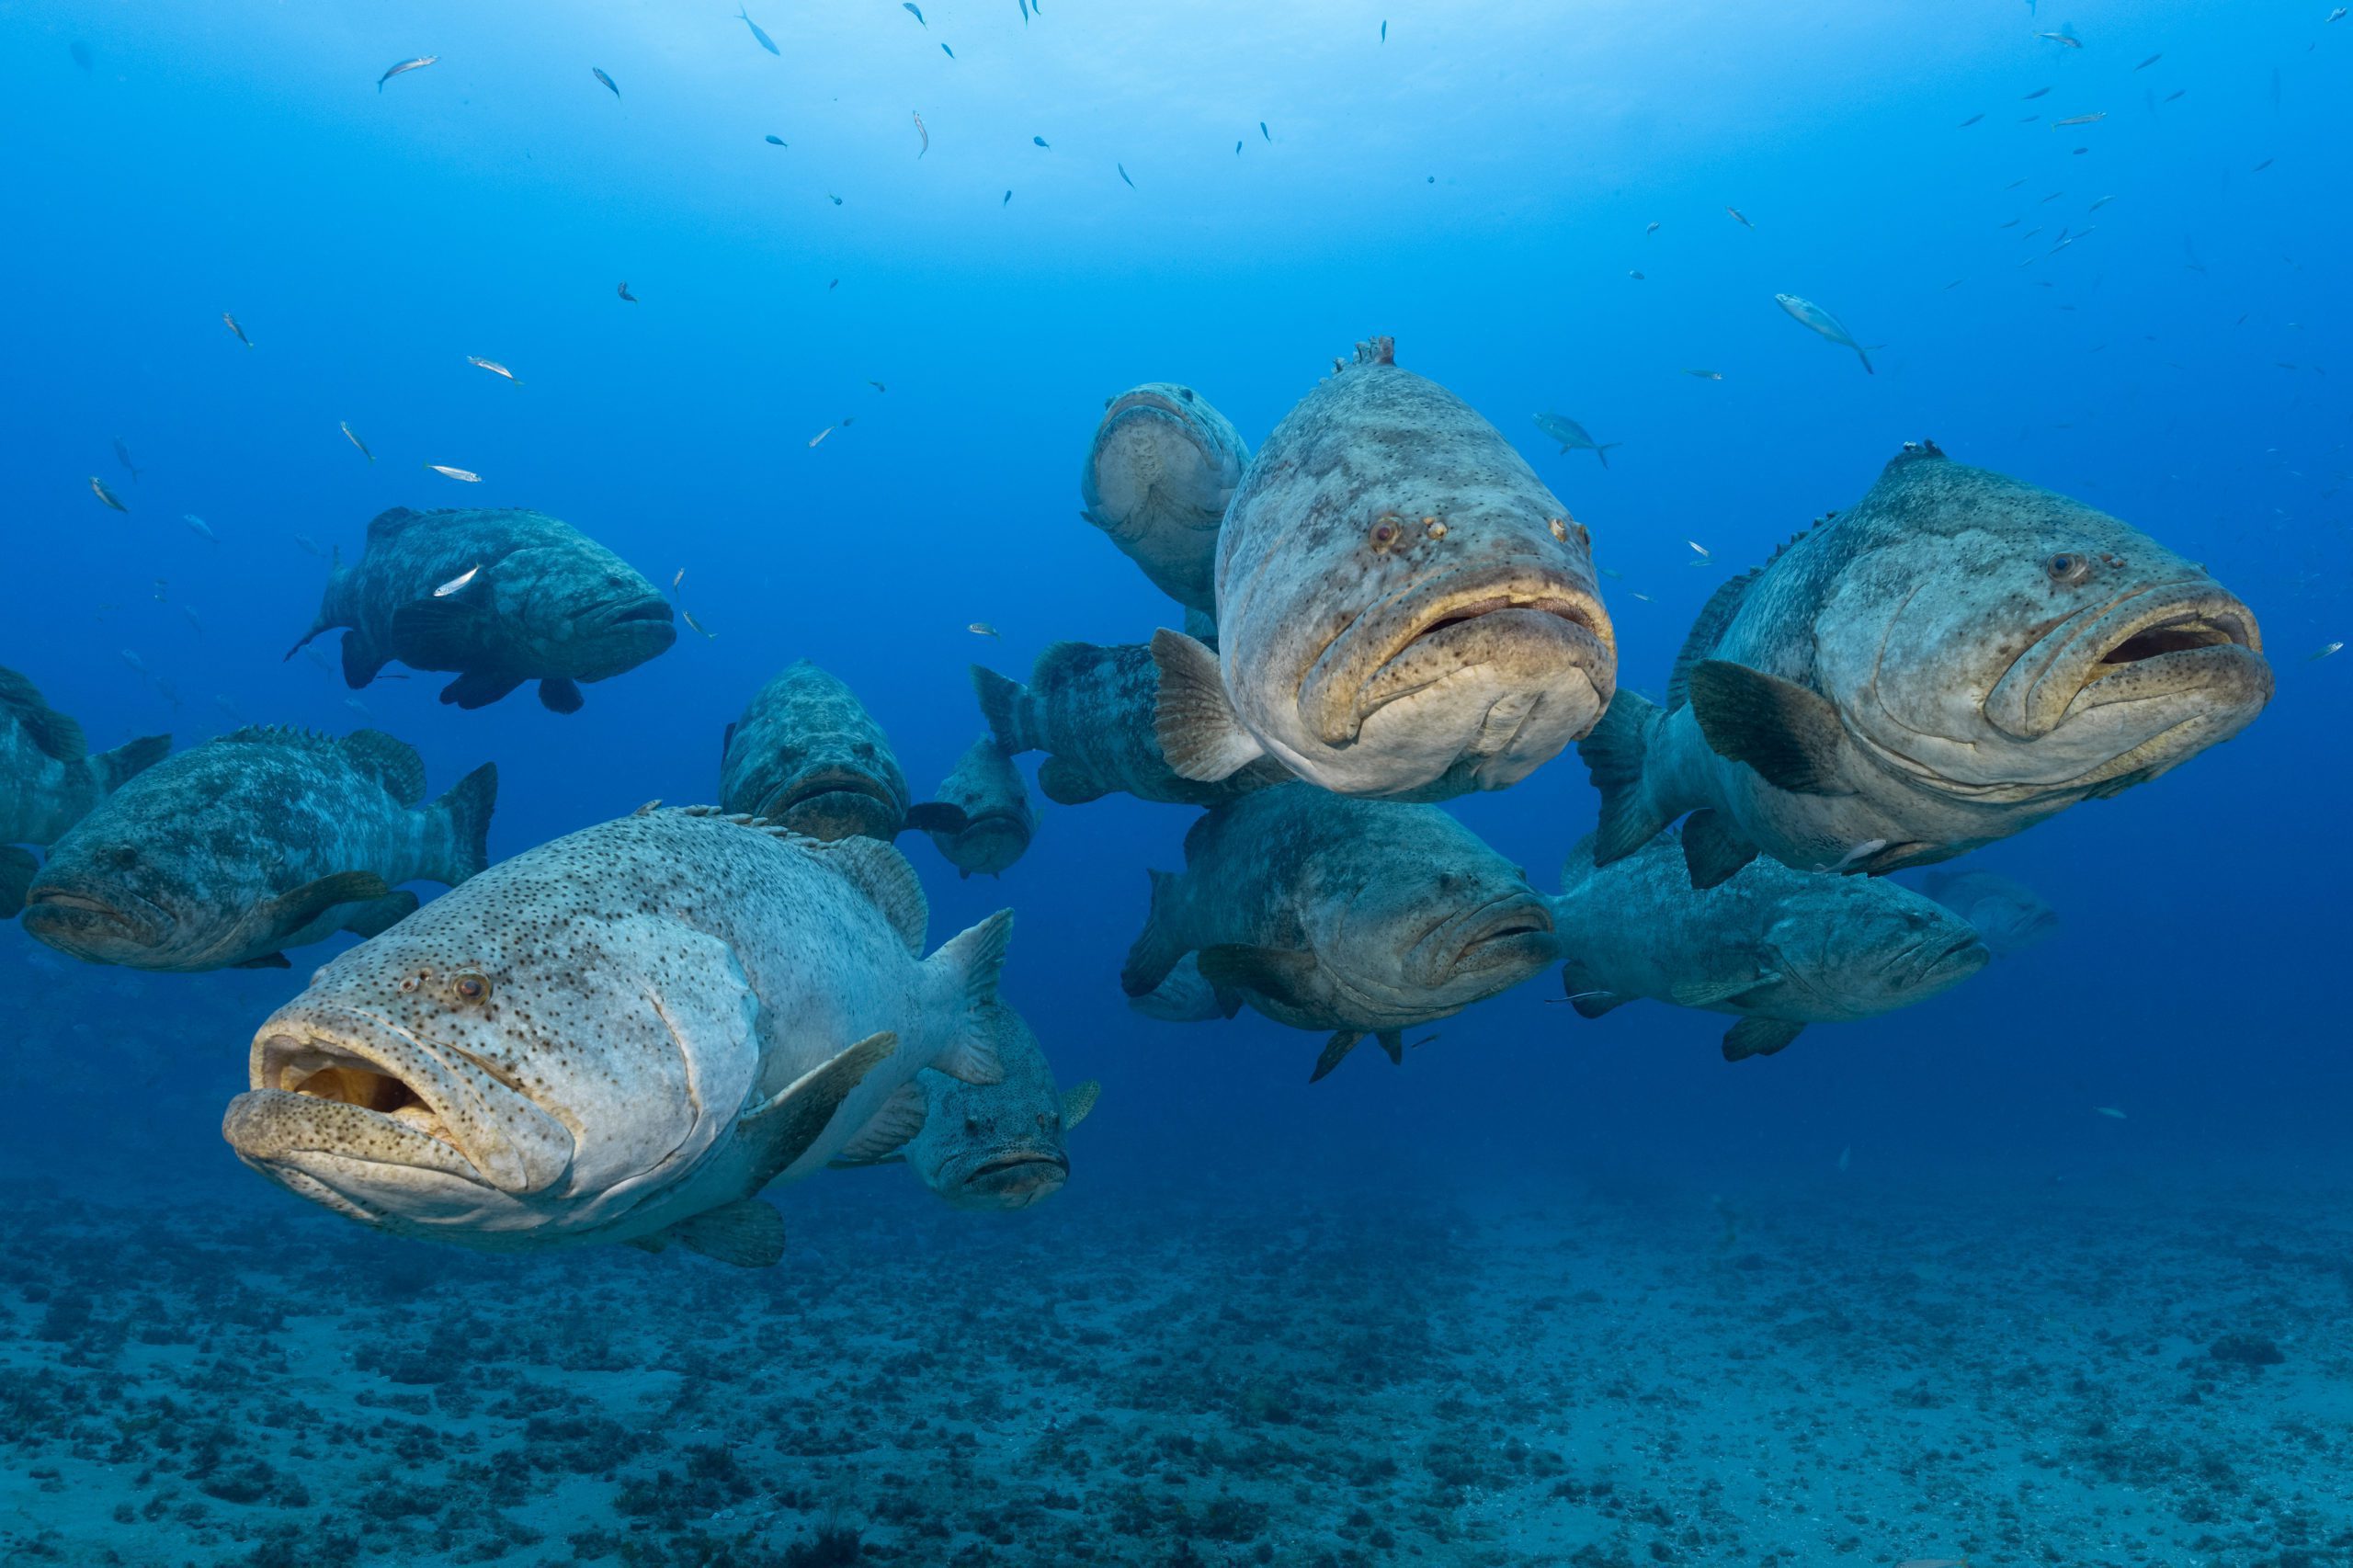 Dive the Goliath grouper hotspots